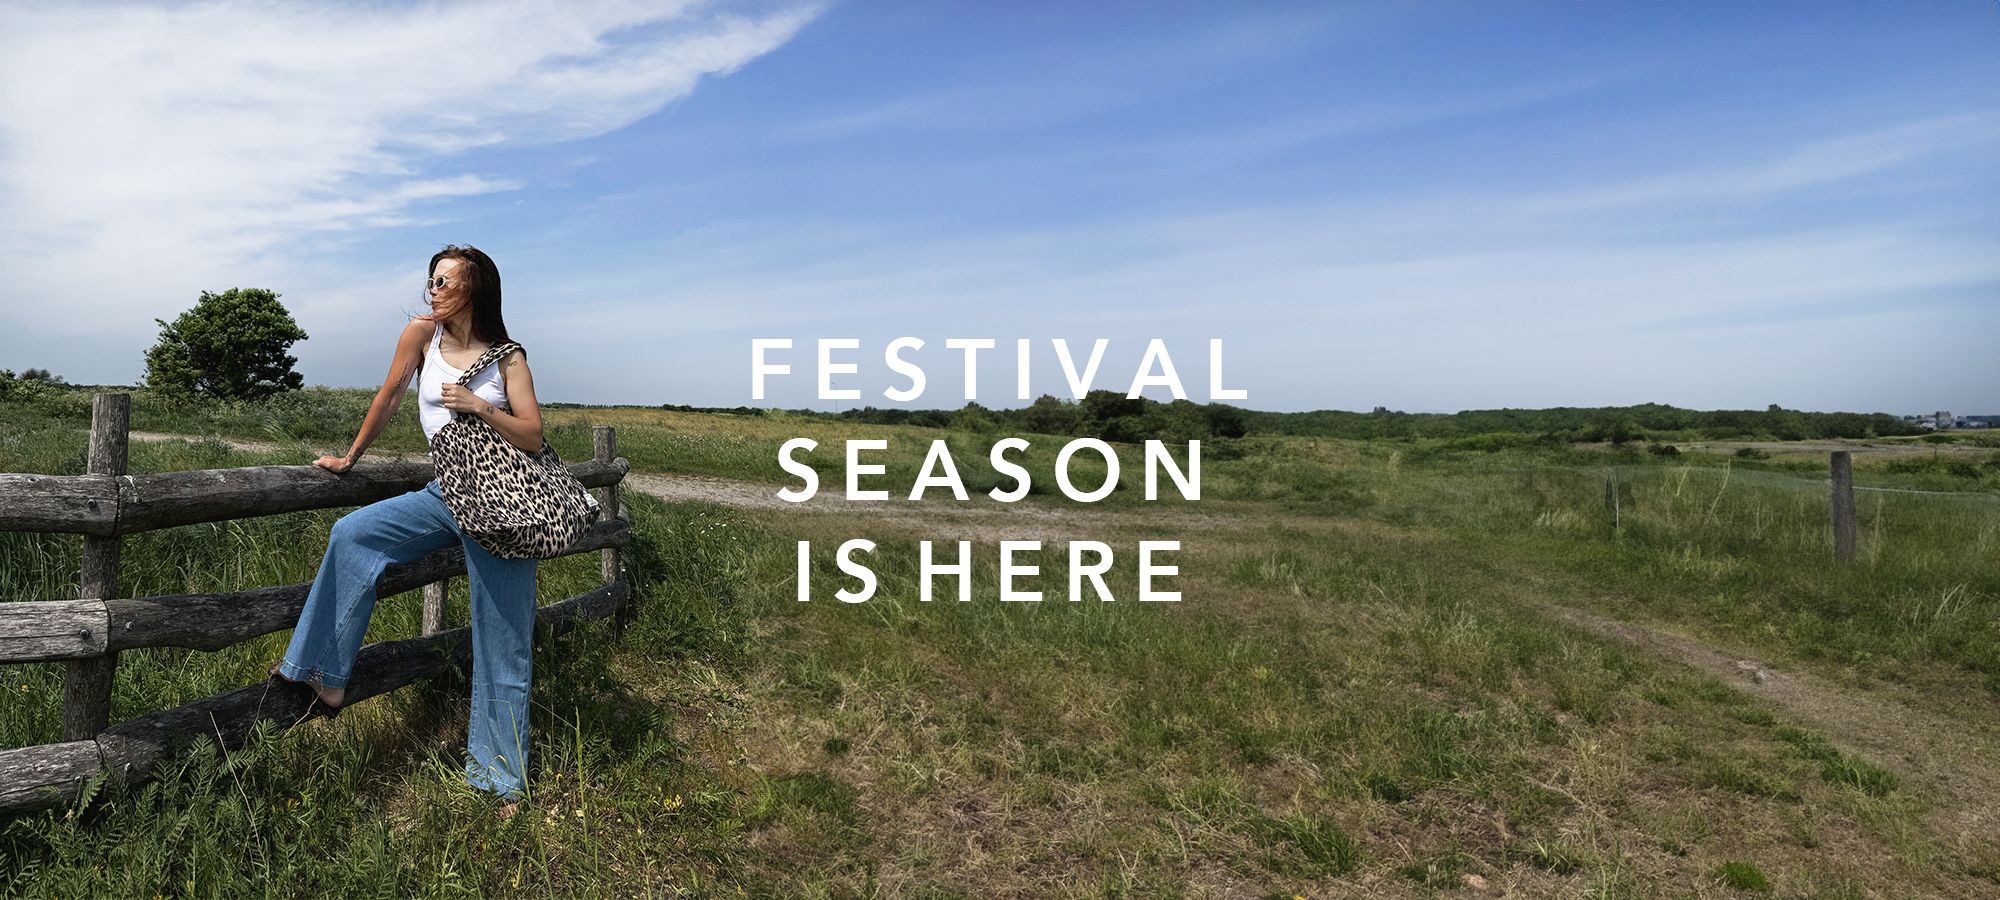 Festival Season at Byflou.com